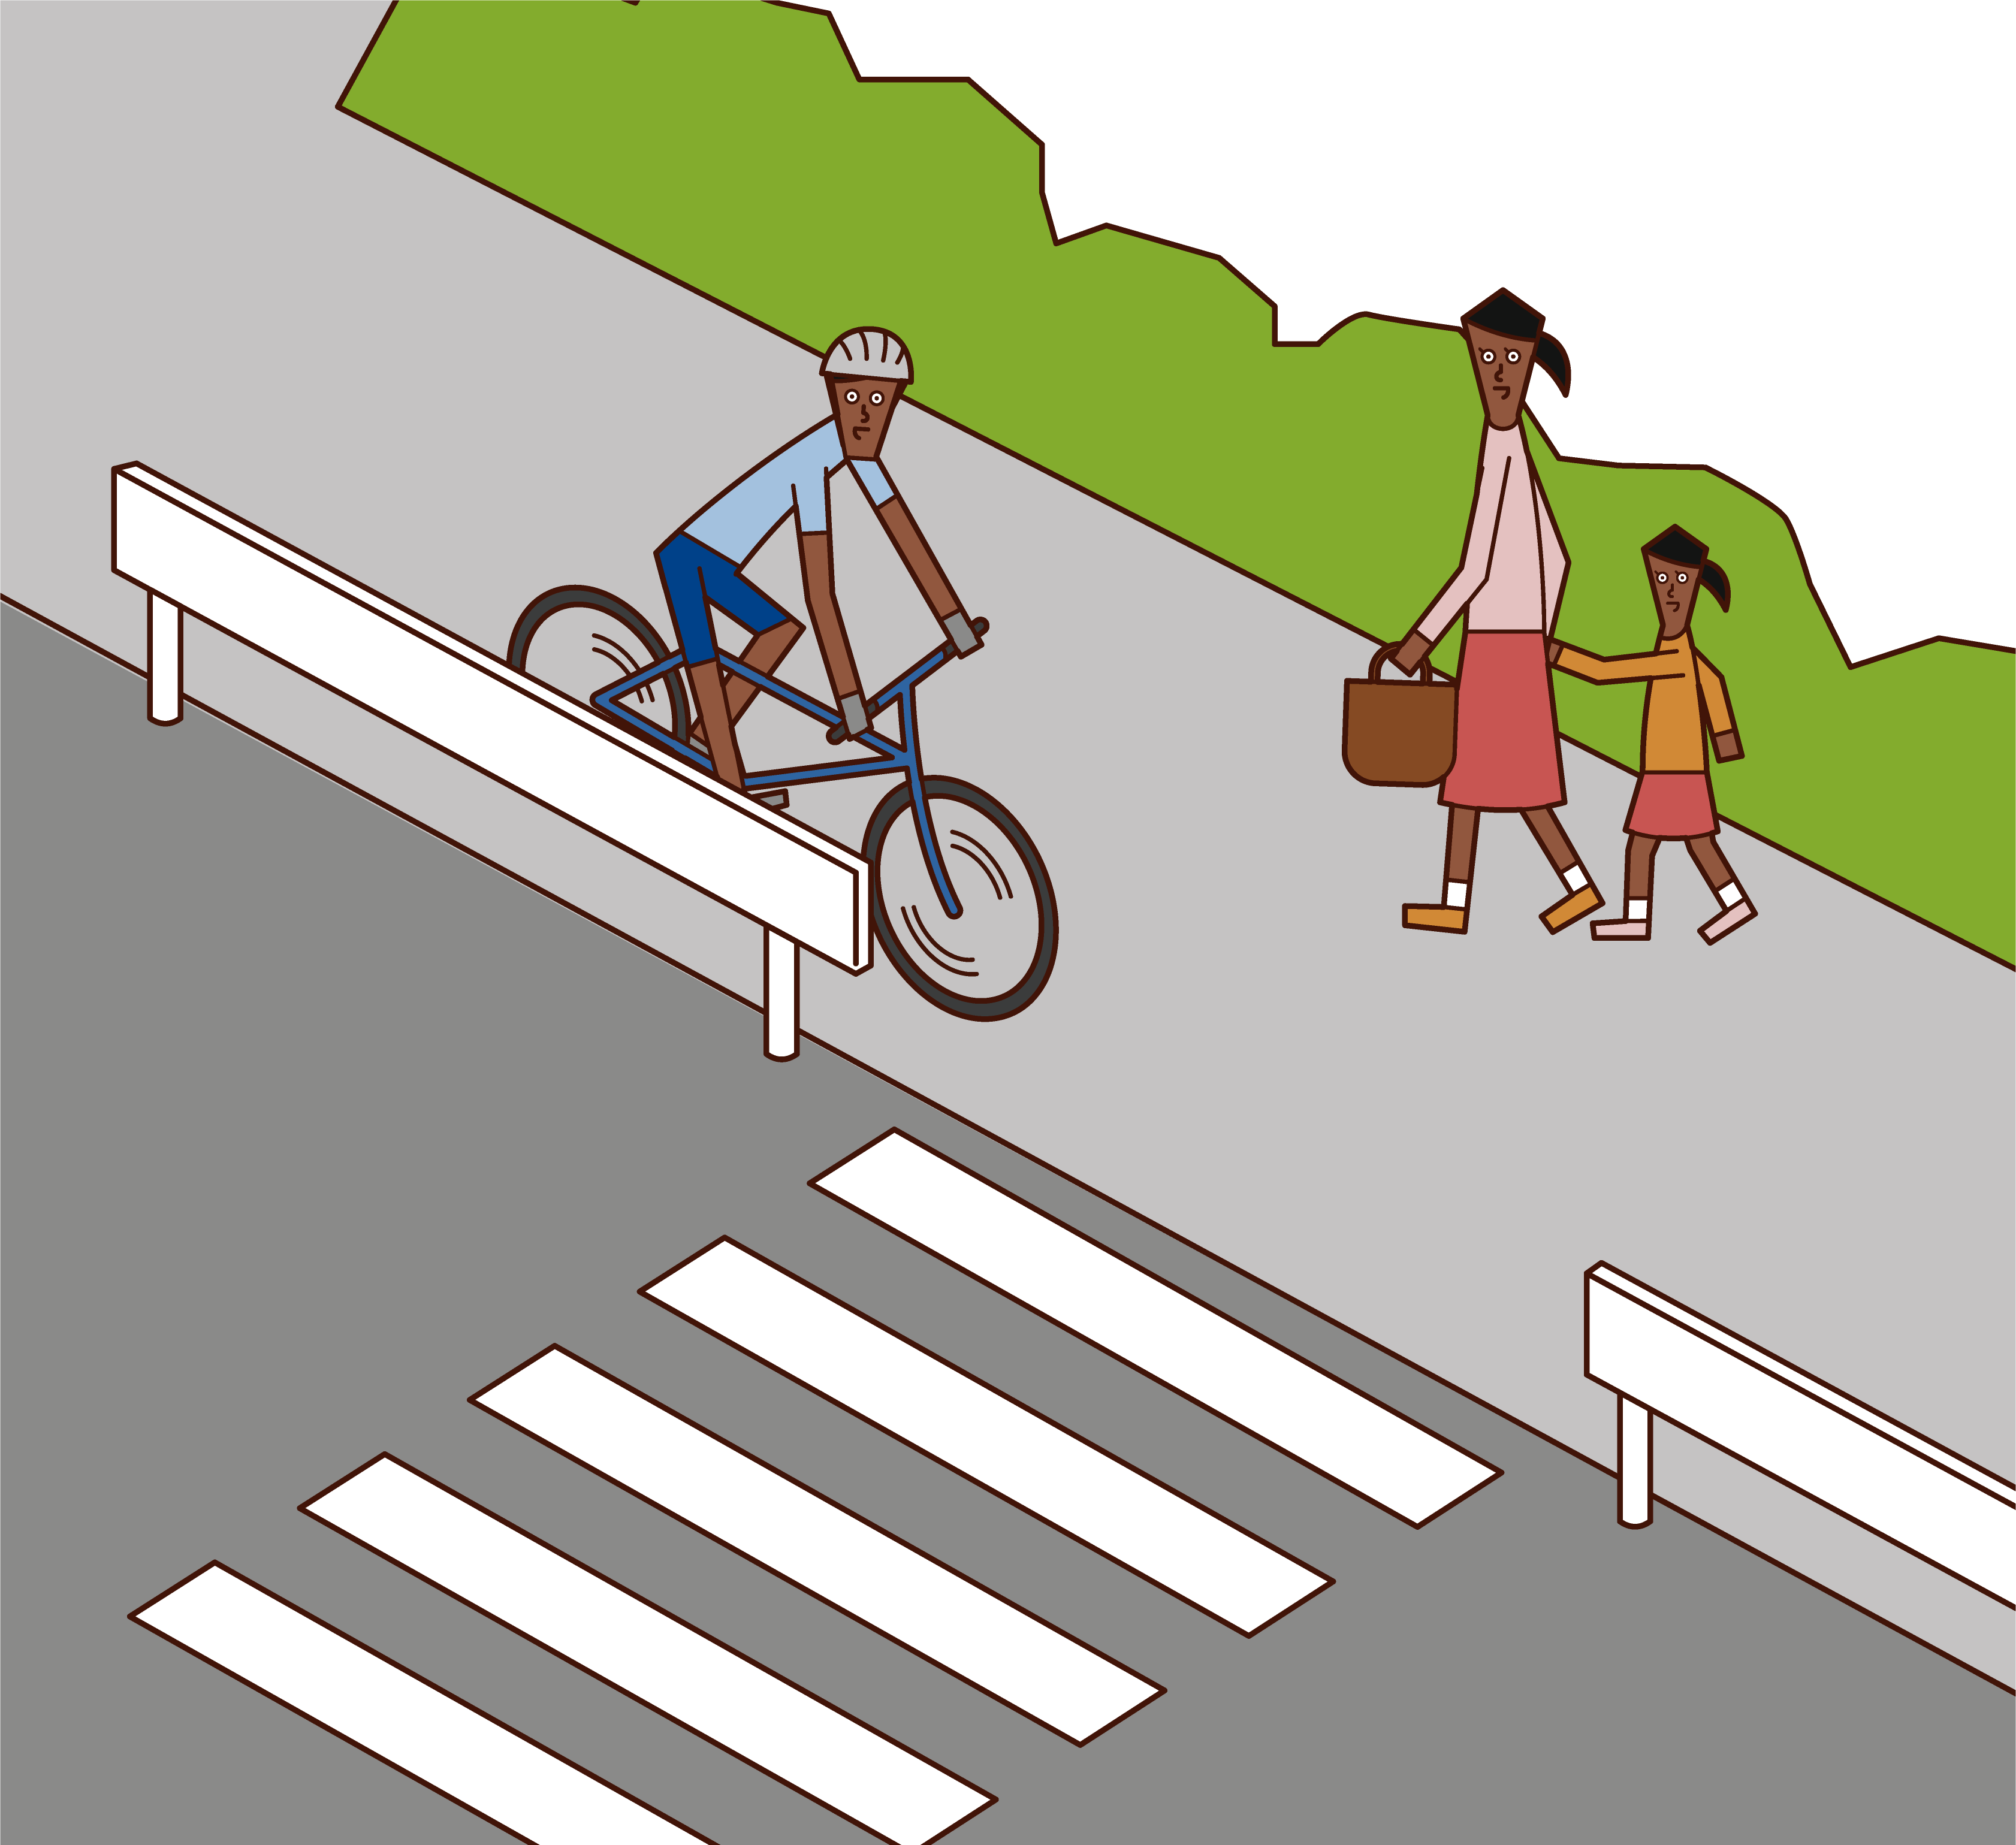 騎自行車(男性)在人行道上緩慢行駛的插圖